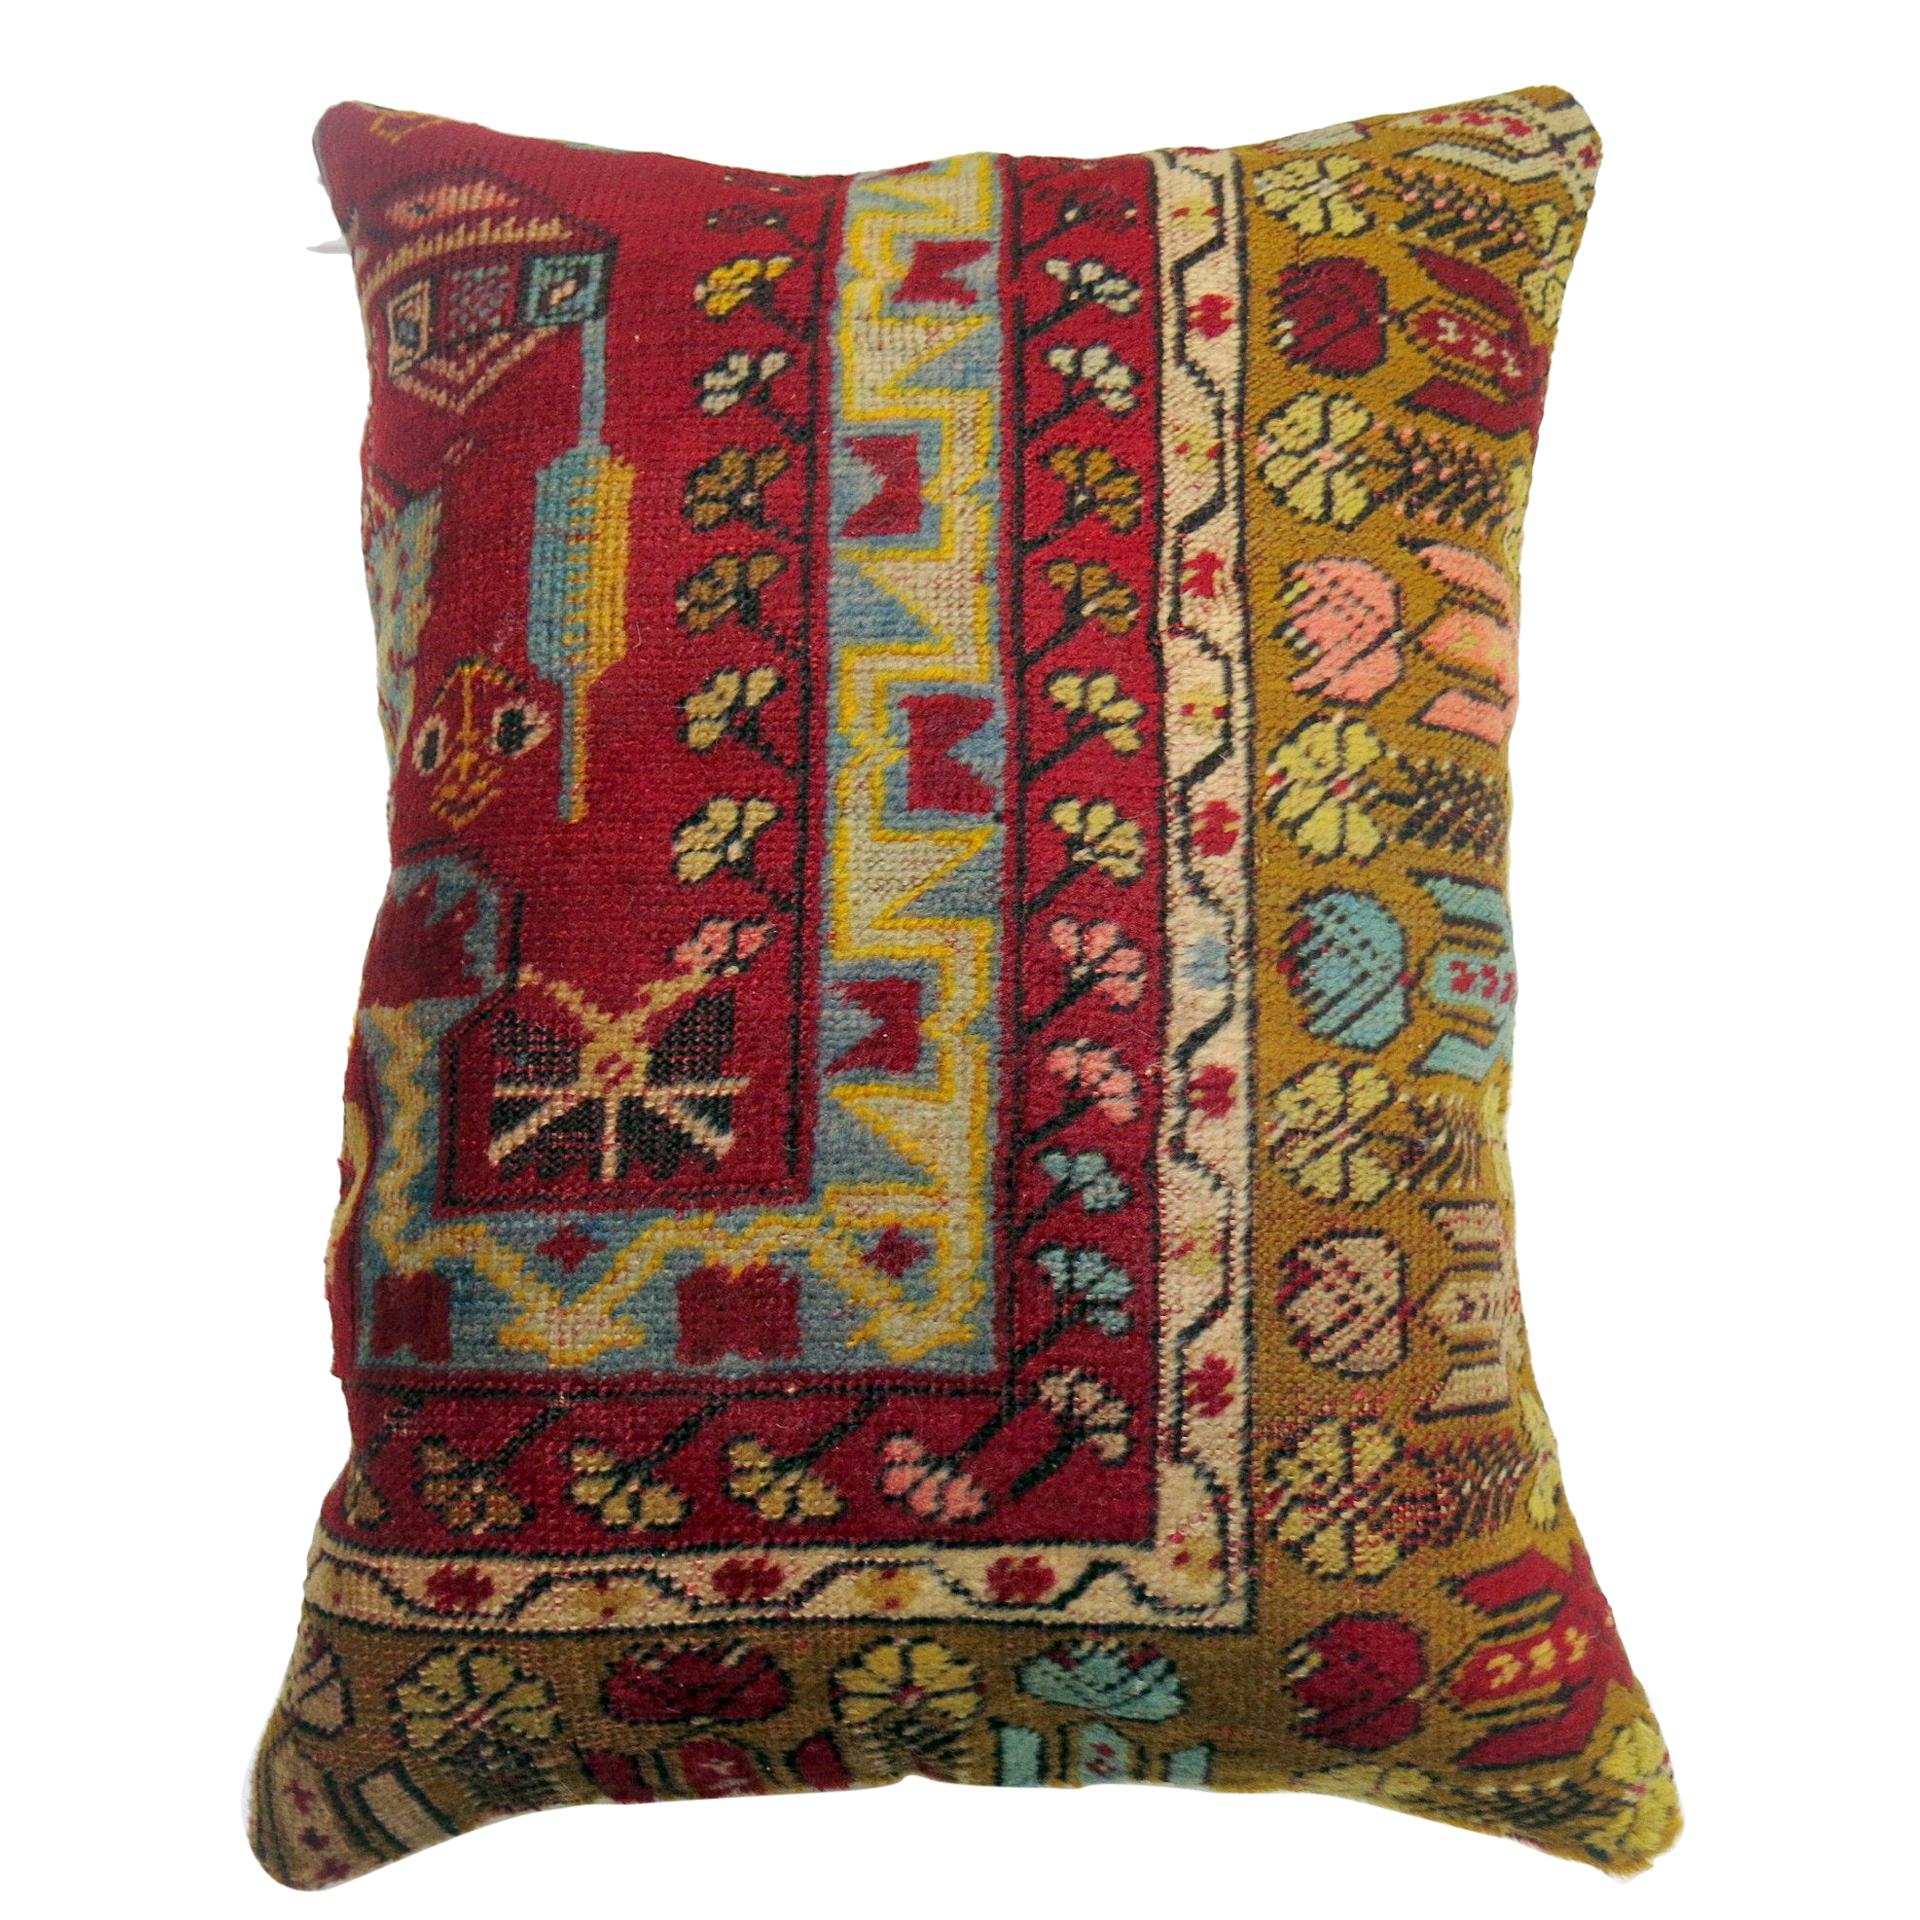 Grand coussin bordé d'un tapis turc coloré